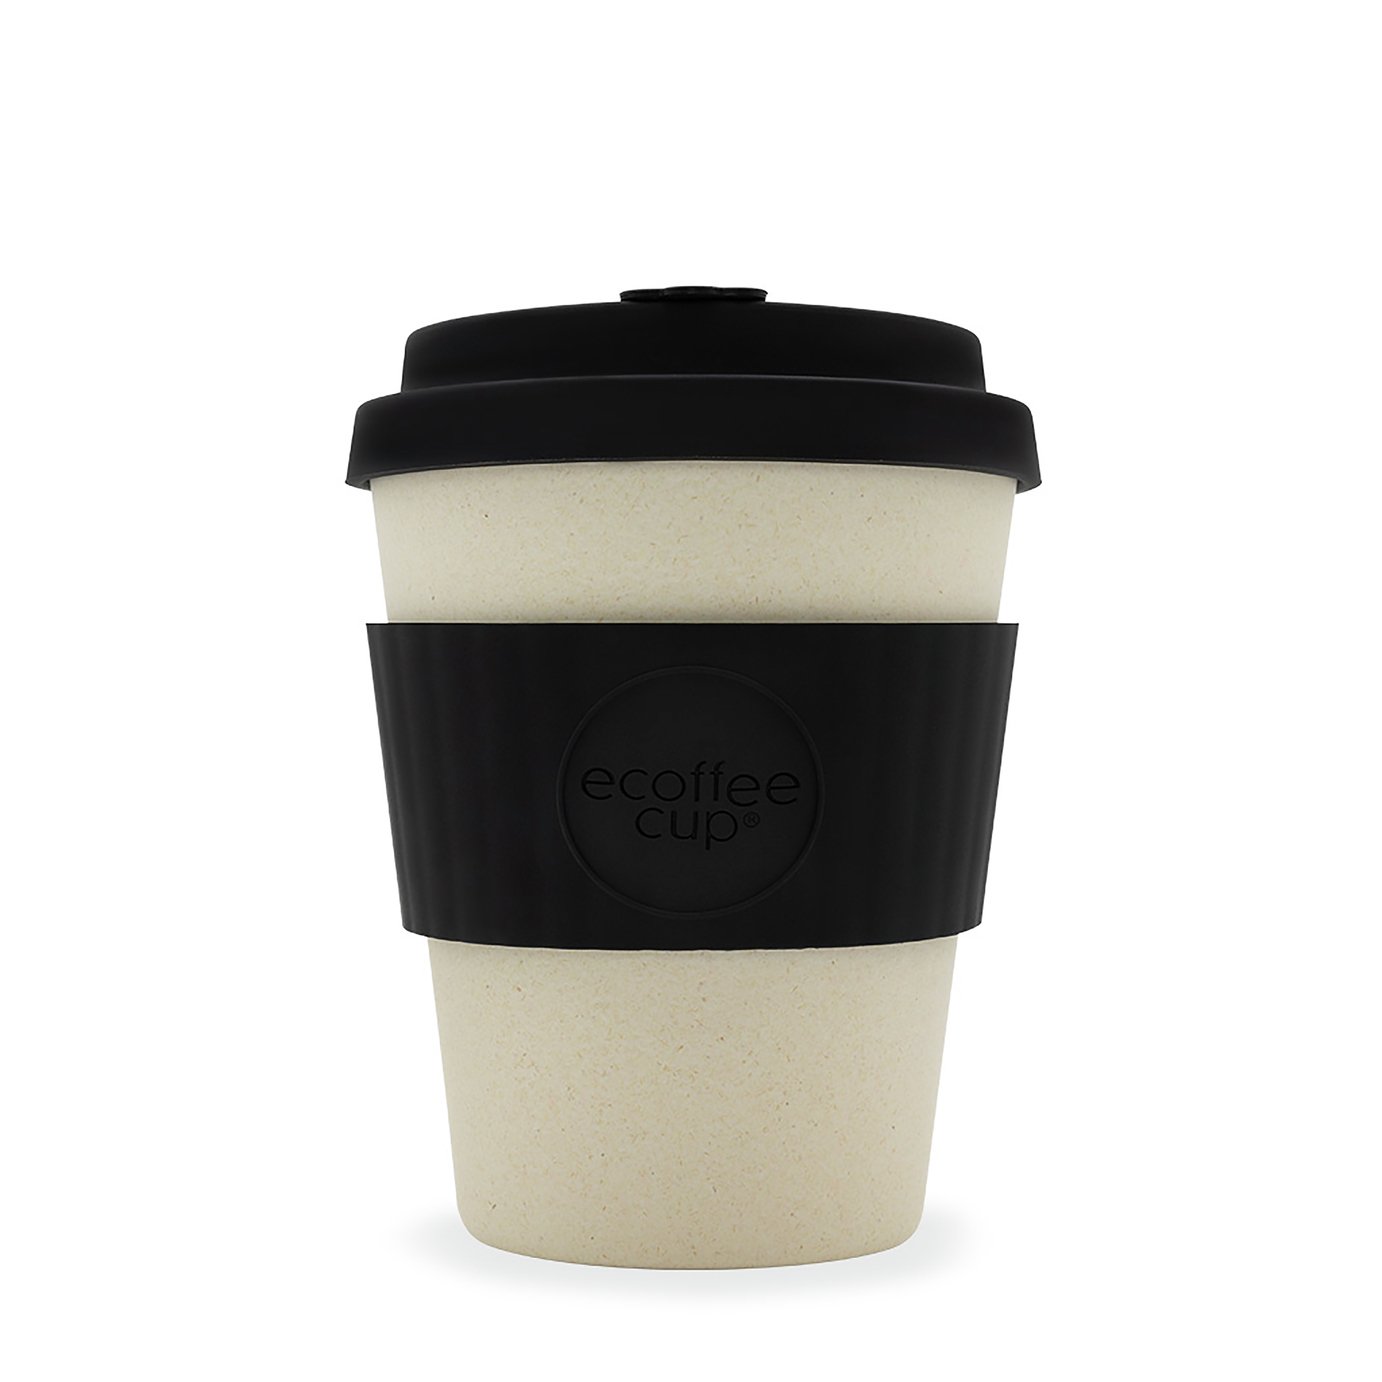 Ecoffee Cup Black & White Matt Travel Mug - 340ml